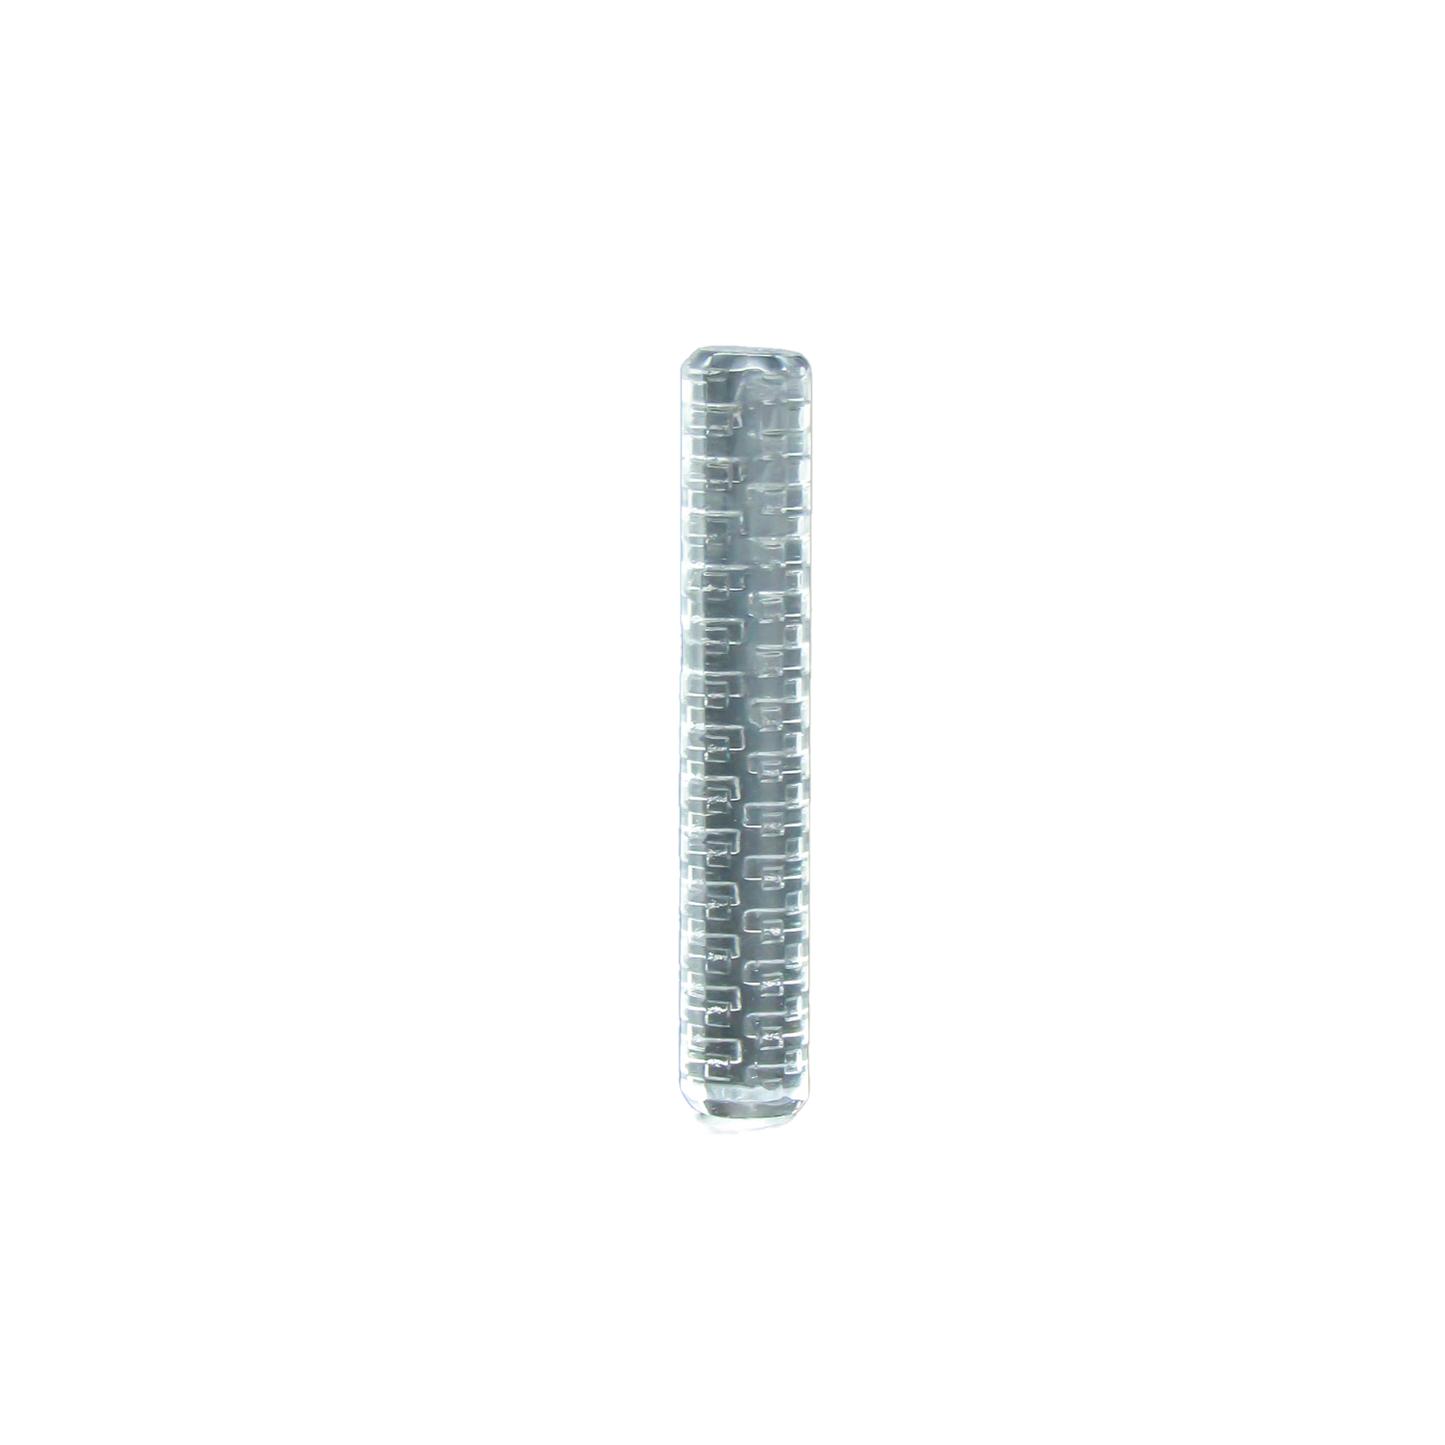 Black Market Glass - Solid Art Pillars 6x35